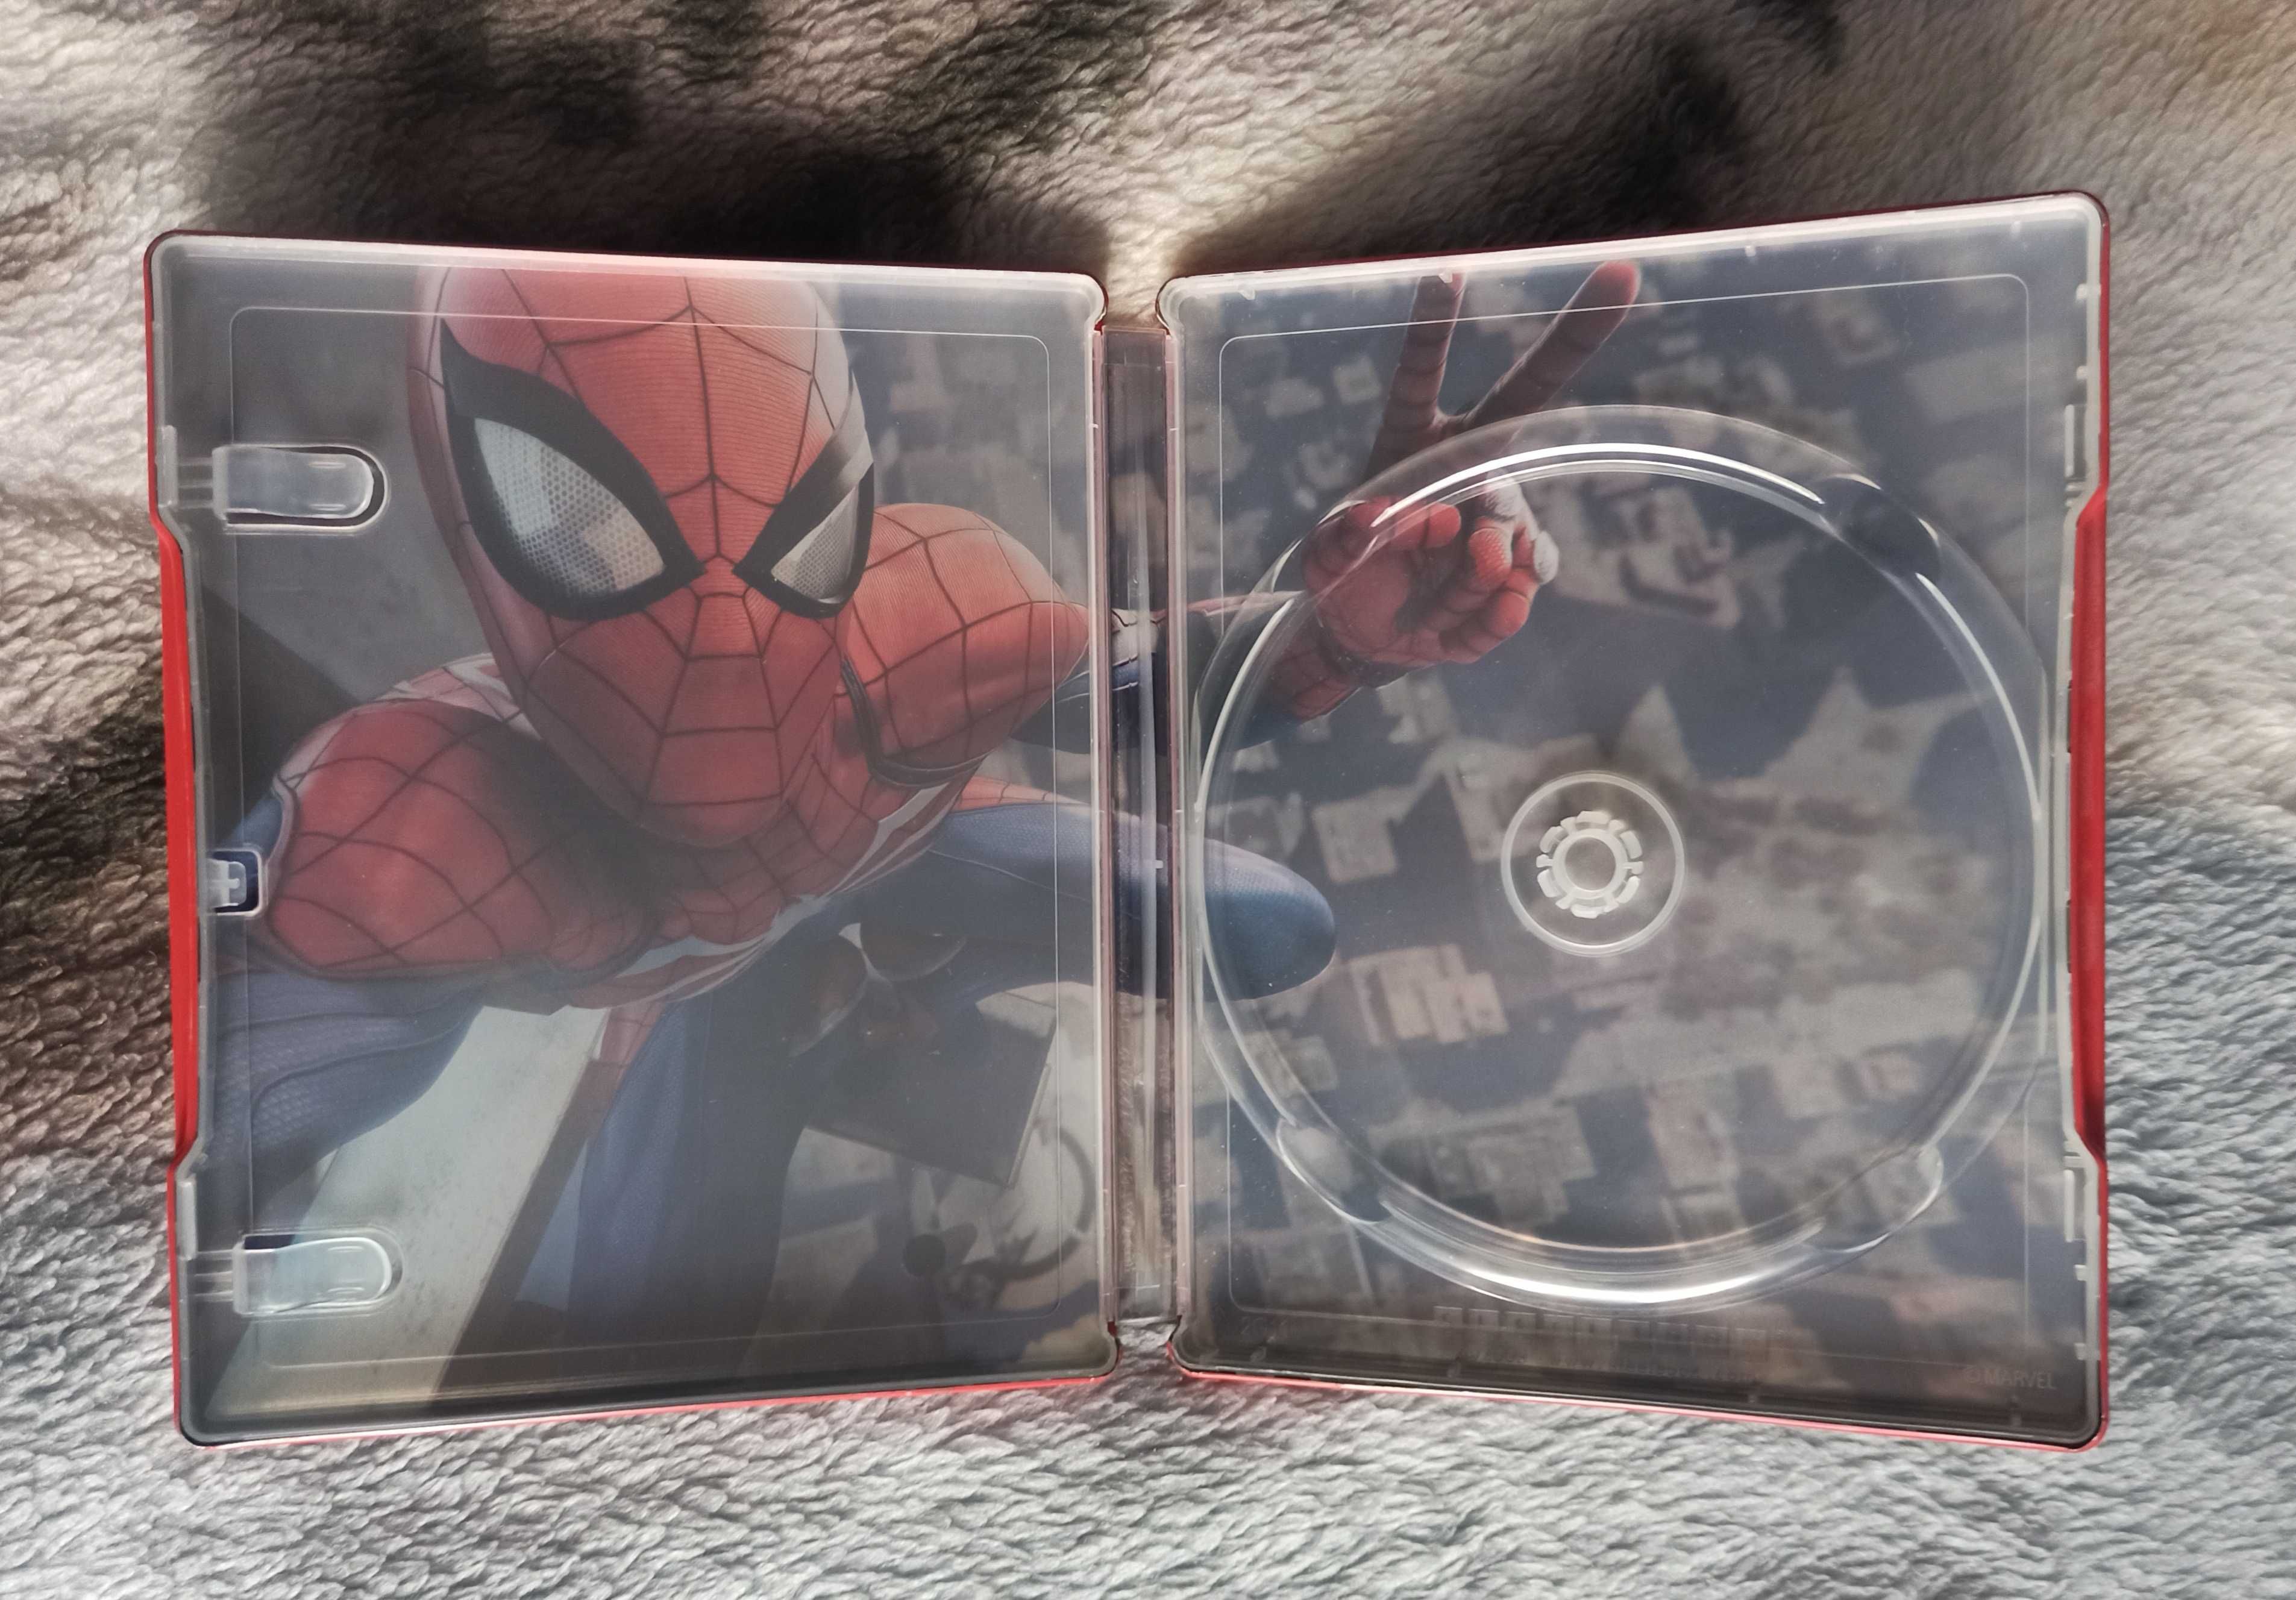 SpiderMan Spider-Man PL Dubbing Steelbook PS4